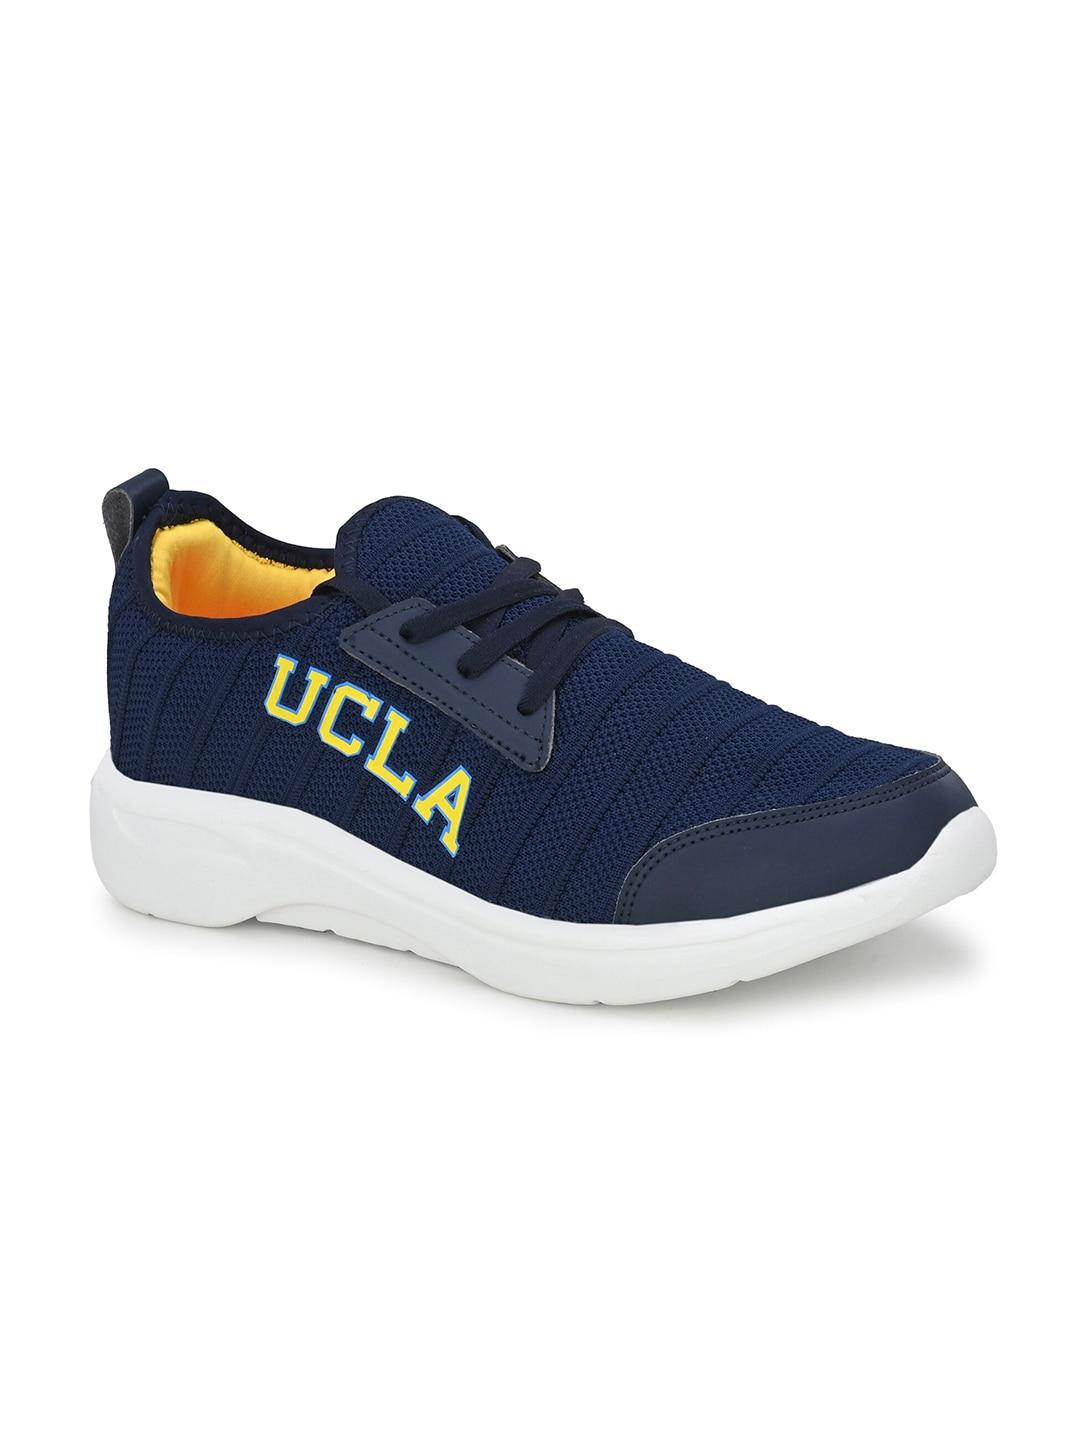 UCLA Men Mesh Memory Foam Non-Marking Running Shoes